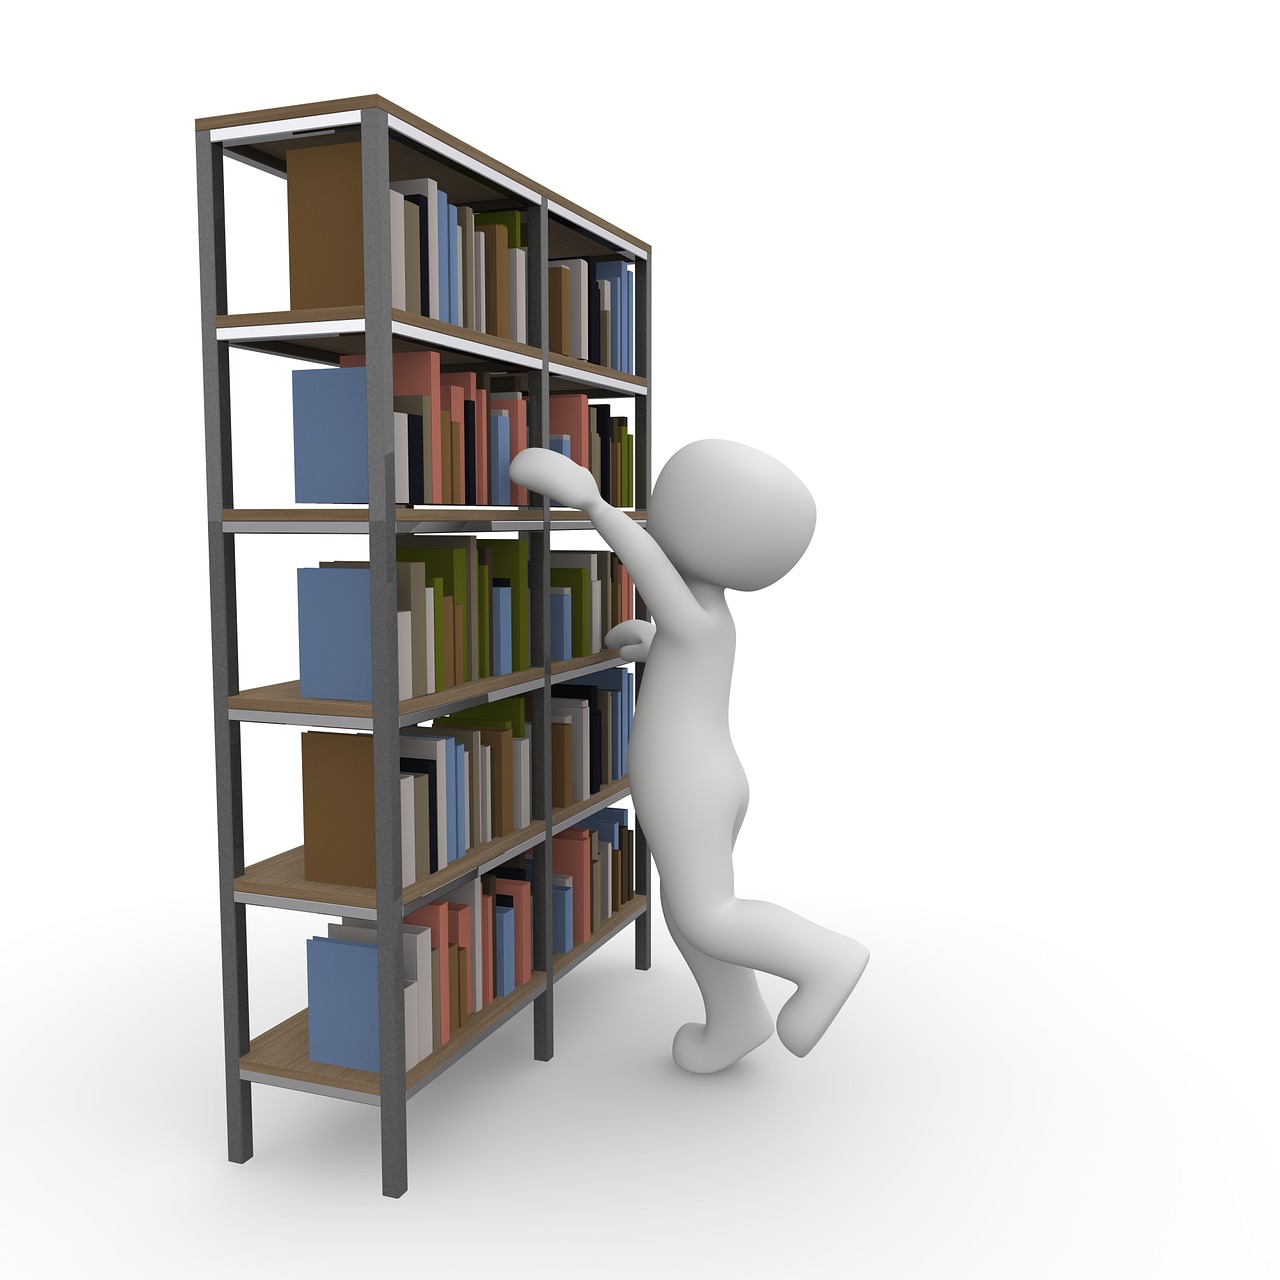 Knygos, Biblioteka, Žinoti, Skaityti, Knyga, Mokytis, Studijuoti, Švietimas, Literatūra, Knygų Lentyna